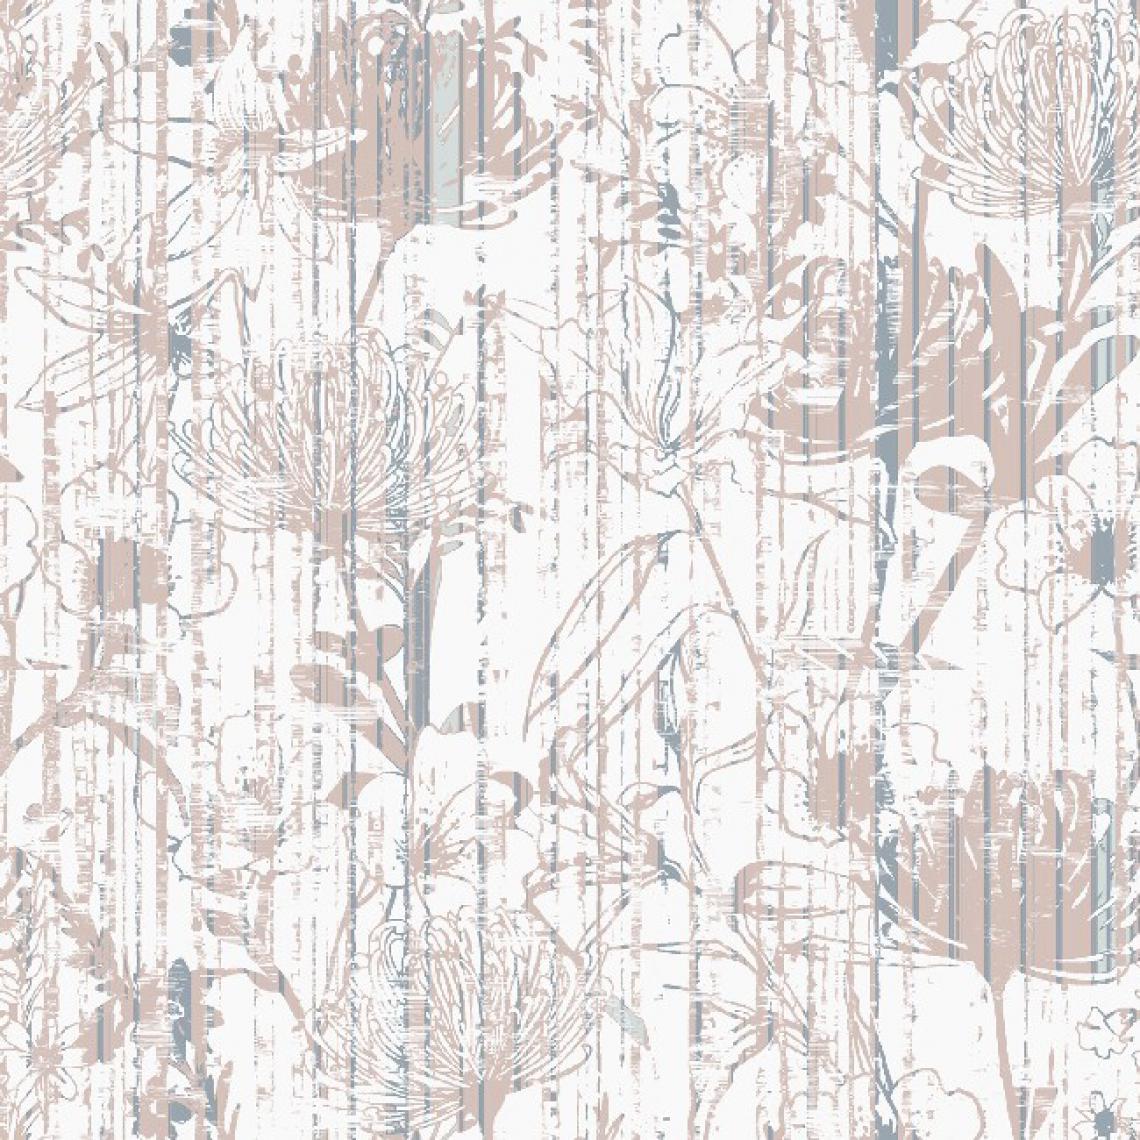 Homemania - HOMEMANIA Tapis Imprimé Flower Dream - Résumé - Décoration de Maison, tapis d'entrée - Antidérapant - pour Couloir, Cuisine, Chambre, Salon - Multicolore en Polyester, Coton, 80 x 200 cm - Tapis